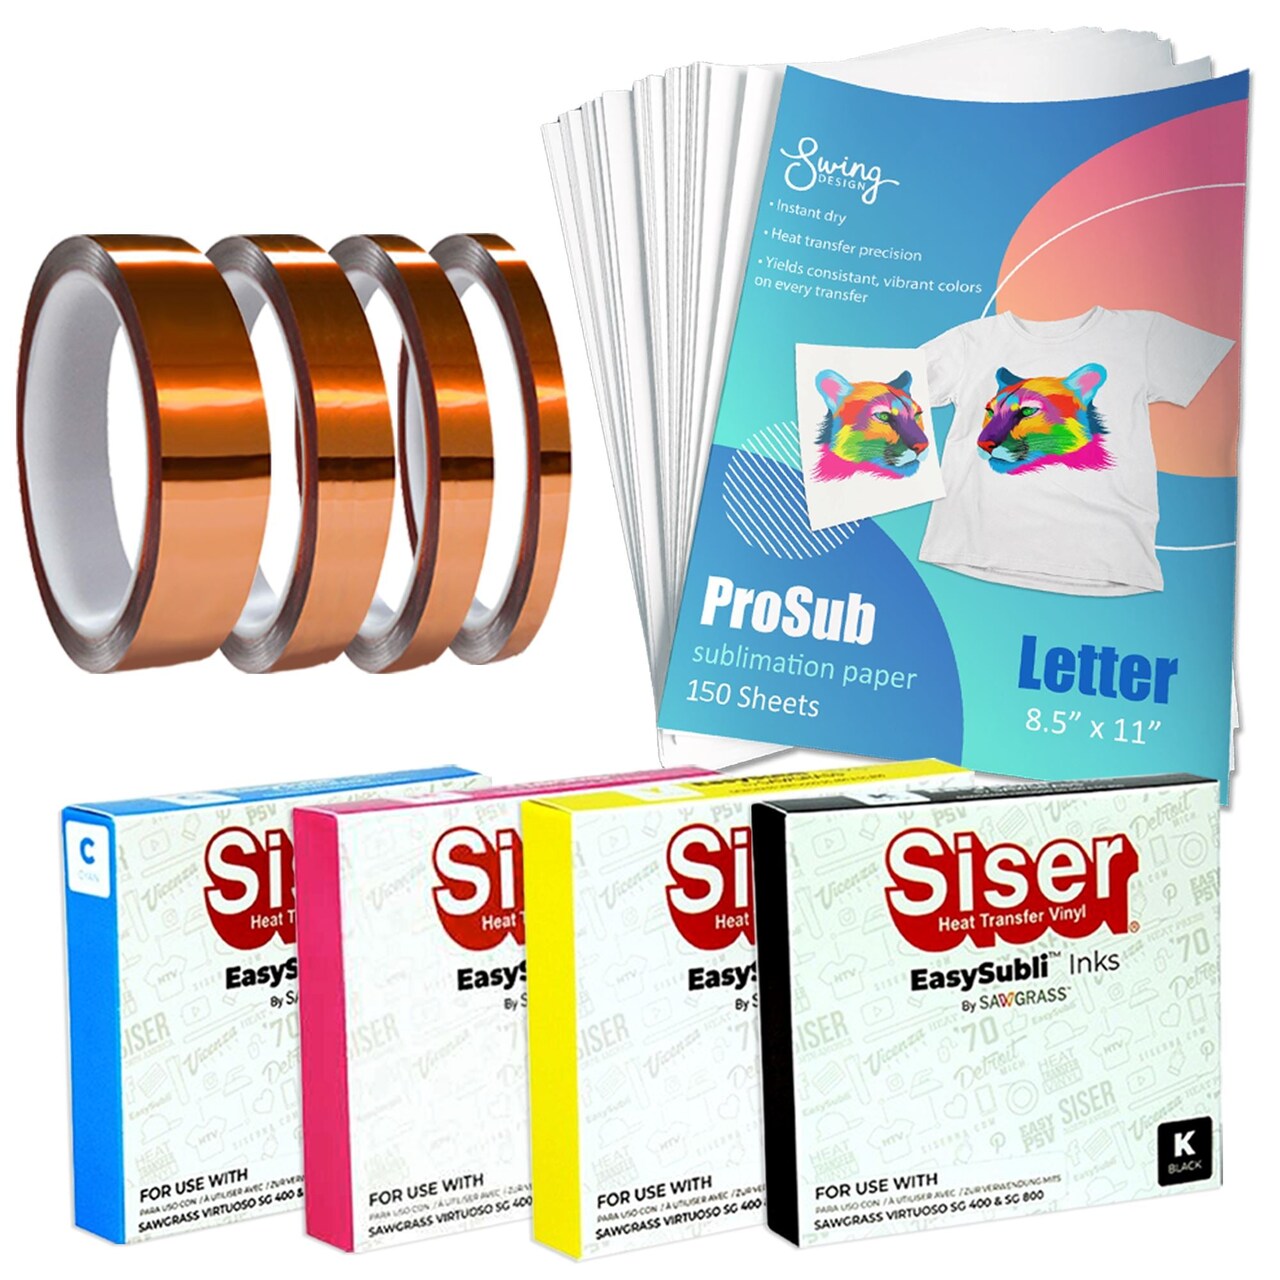 Sawgrass EasySubli Inks SG500 & SG1000 - 4 Pack, ProSub Paper & Tape